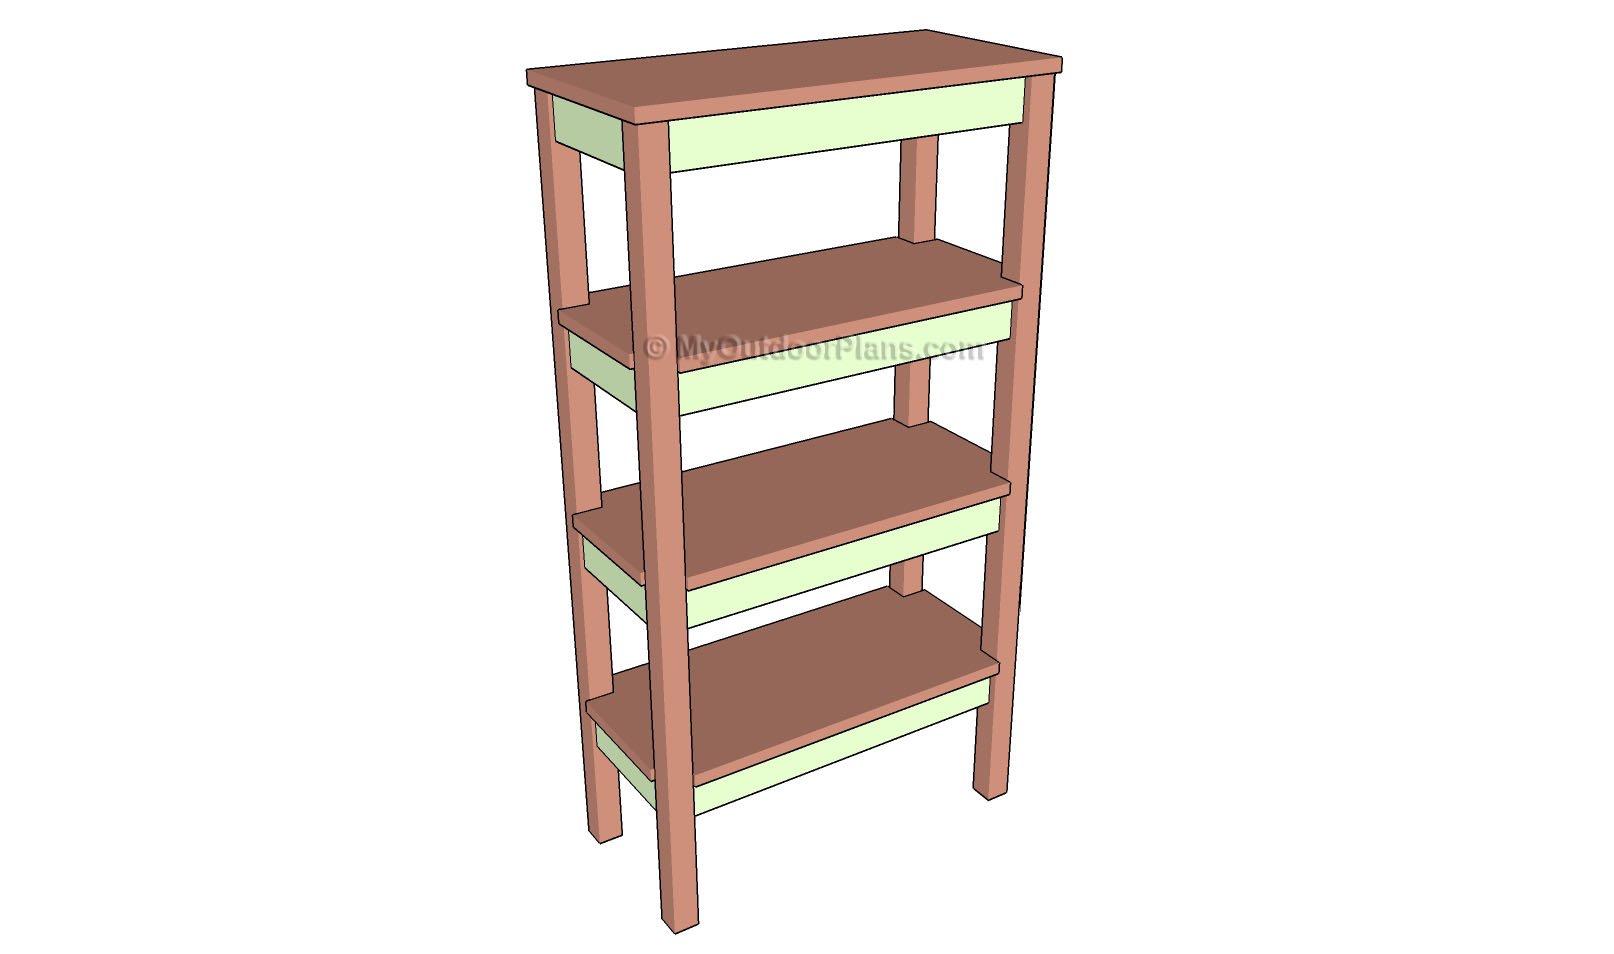 How To Build Bathroom Shelves MyOutdoorPlans Free Woodworking